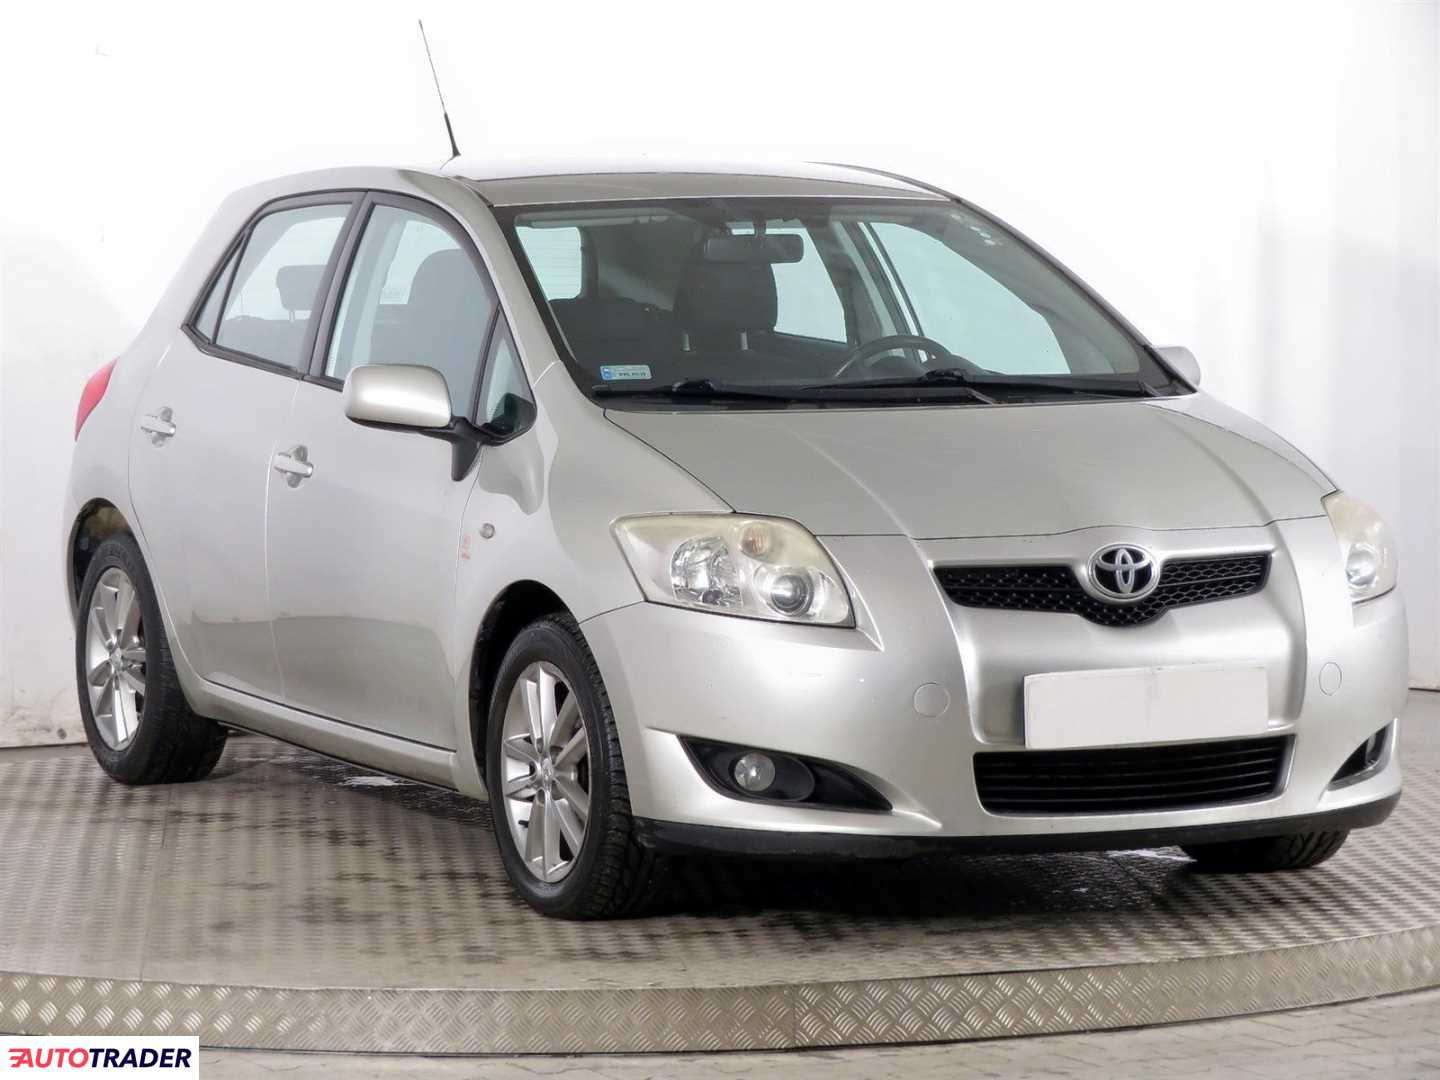 Toyota Auris 2008 1.6 122 KM